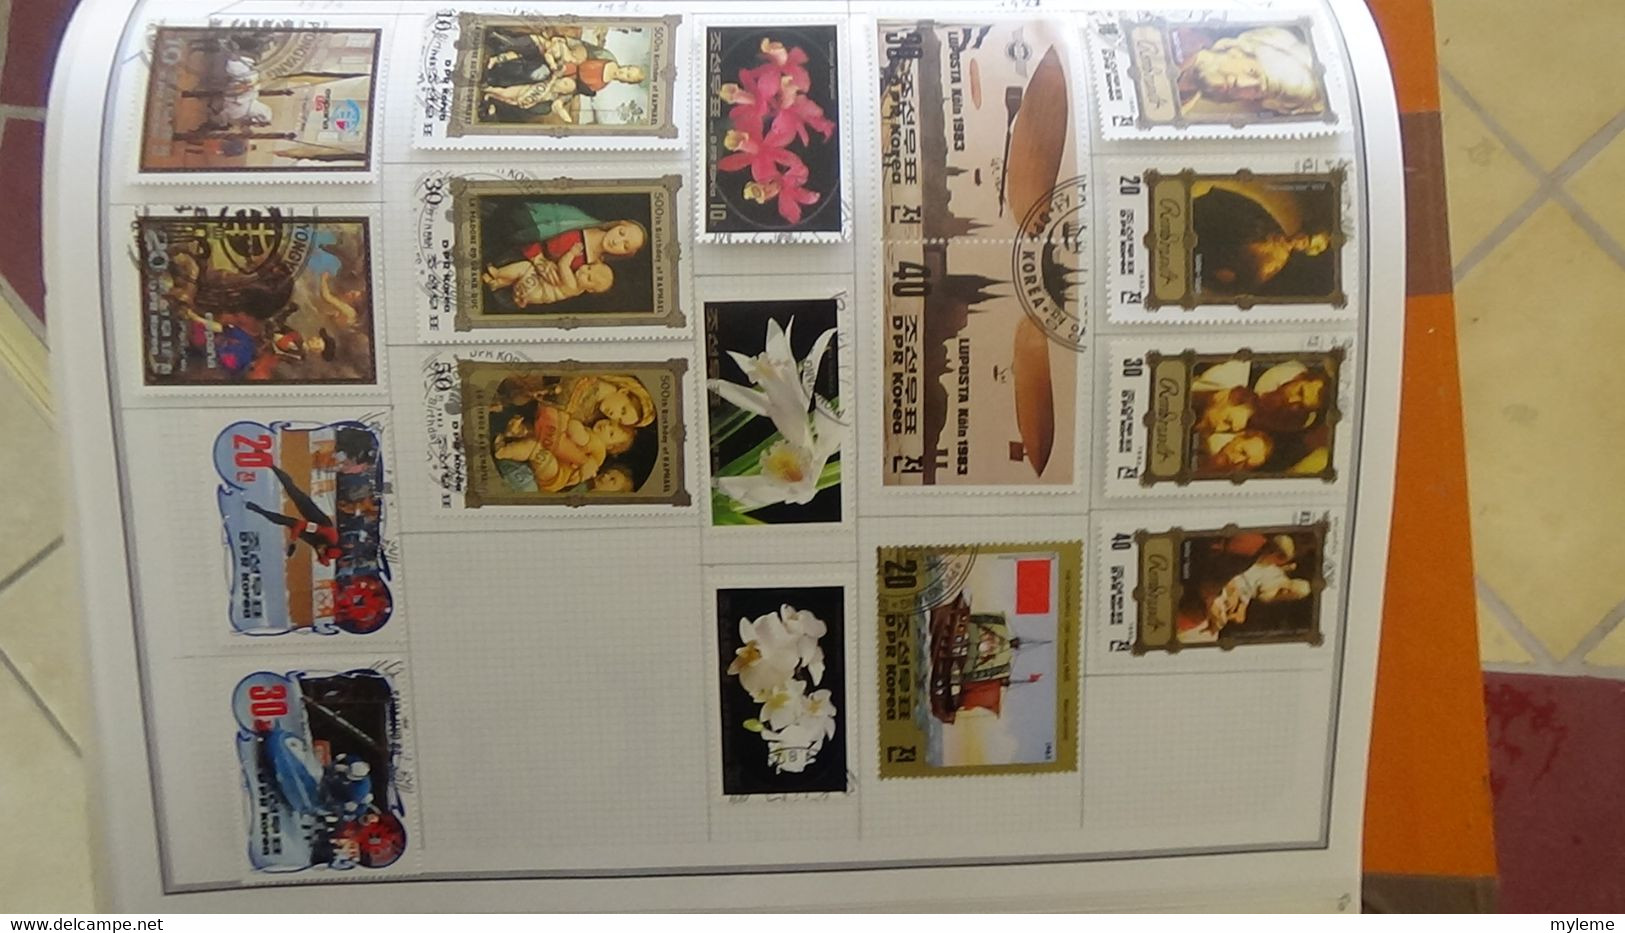 R31 Sur feuilles de cahier timbres Corée, Hong-Kong, Indes, Indochine . Port offert à 50 % pour la France